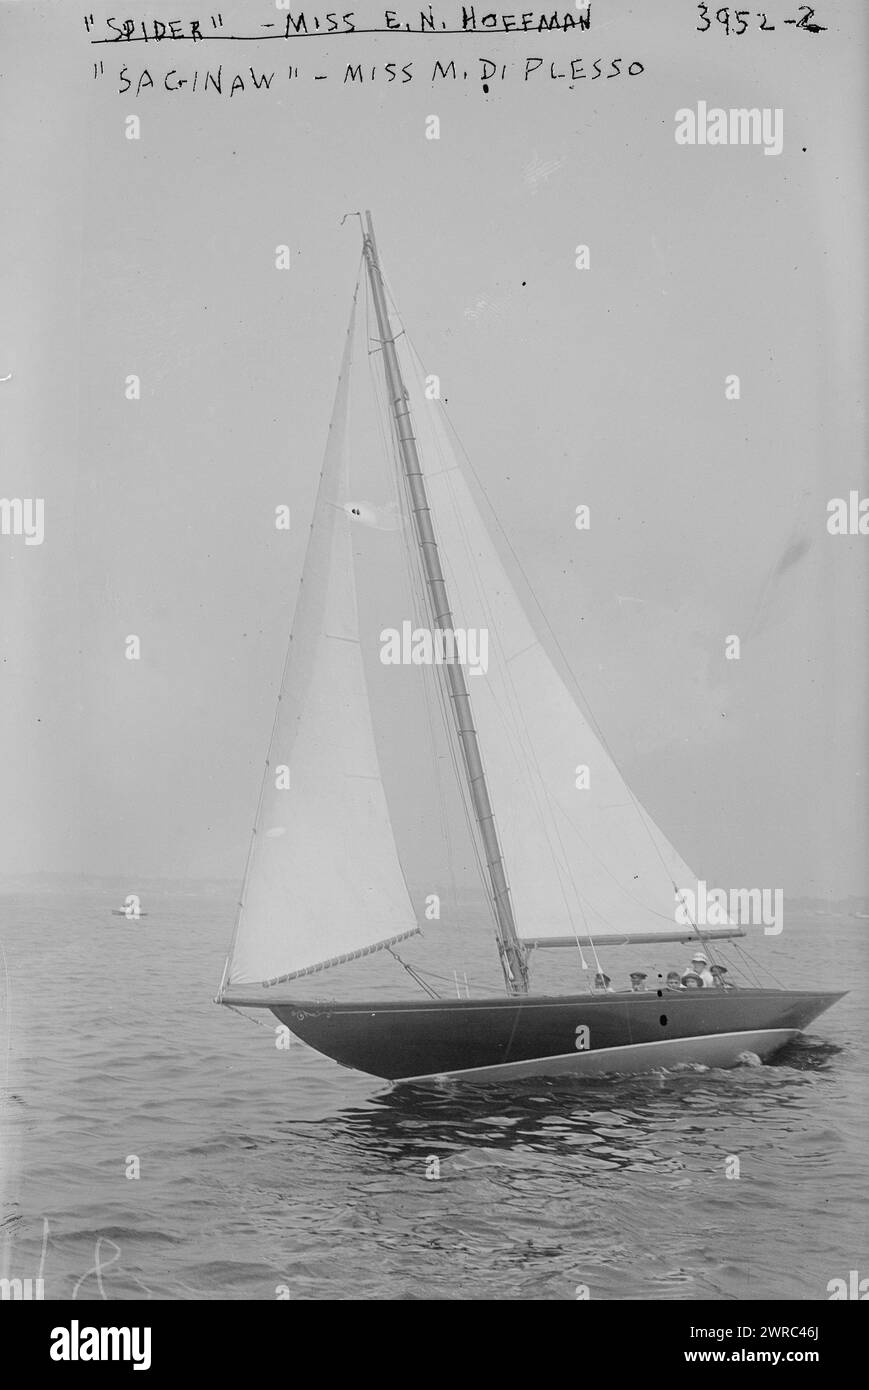 Saginaw', Miss M. di Plesso, la fotografia mostra lo yacht Saginaw capitanato dalla signorina M. di Plesso durante la settimana di regata dell'Atlantic Yacht Club, 1916 agosto., 1916, Glass negative, 1 negative: Glass Foto Stock